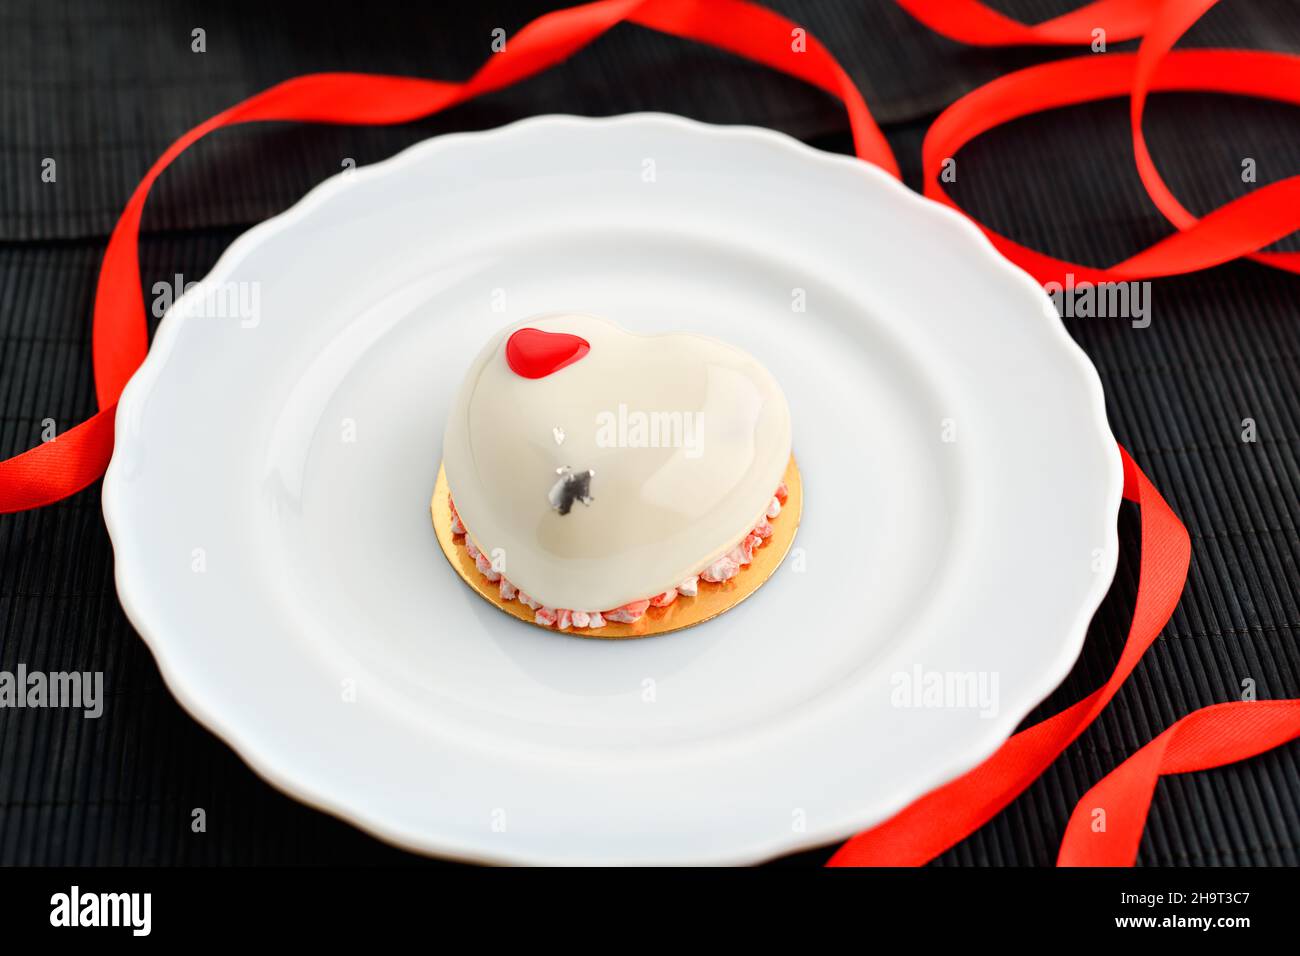 Ein Kuchen in Herzform. Ein herzförmiger Mousse-Cupcake auf einem Teller auf schwarzem Hintergrund mit einem roten Band. Valentinstag. Stockfoto